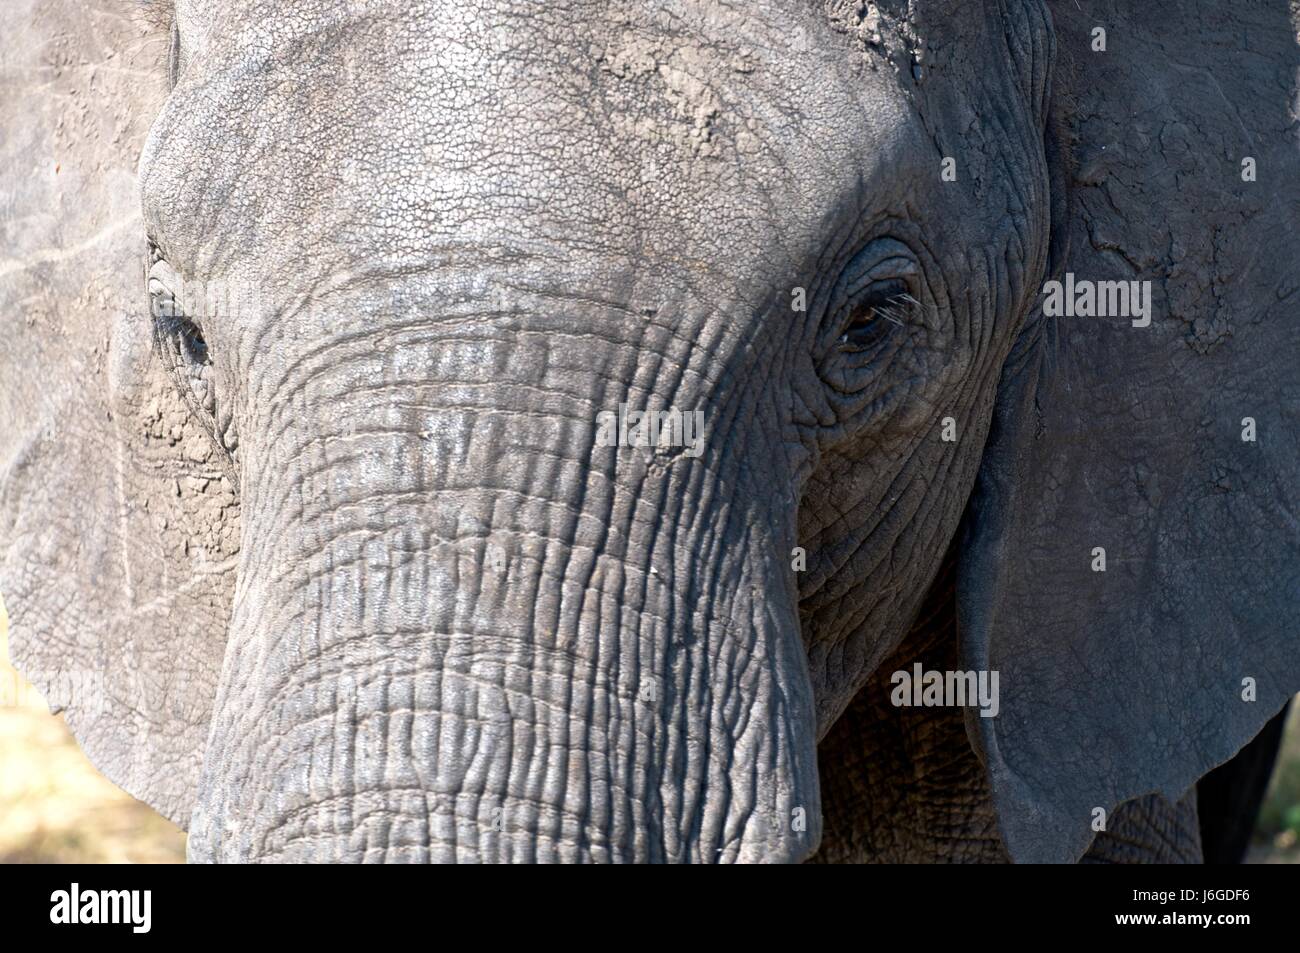 national park africa mammals elephants tanzania head national park africa Stock Photo